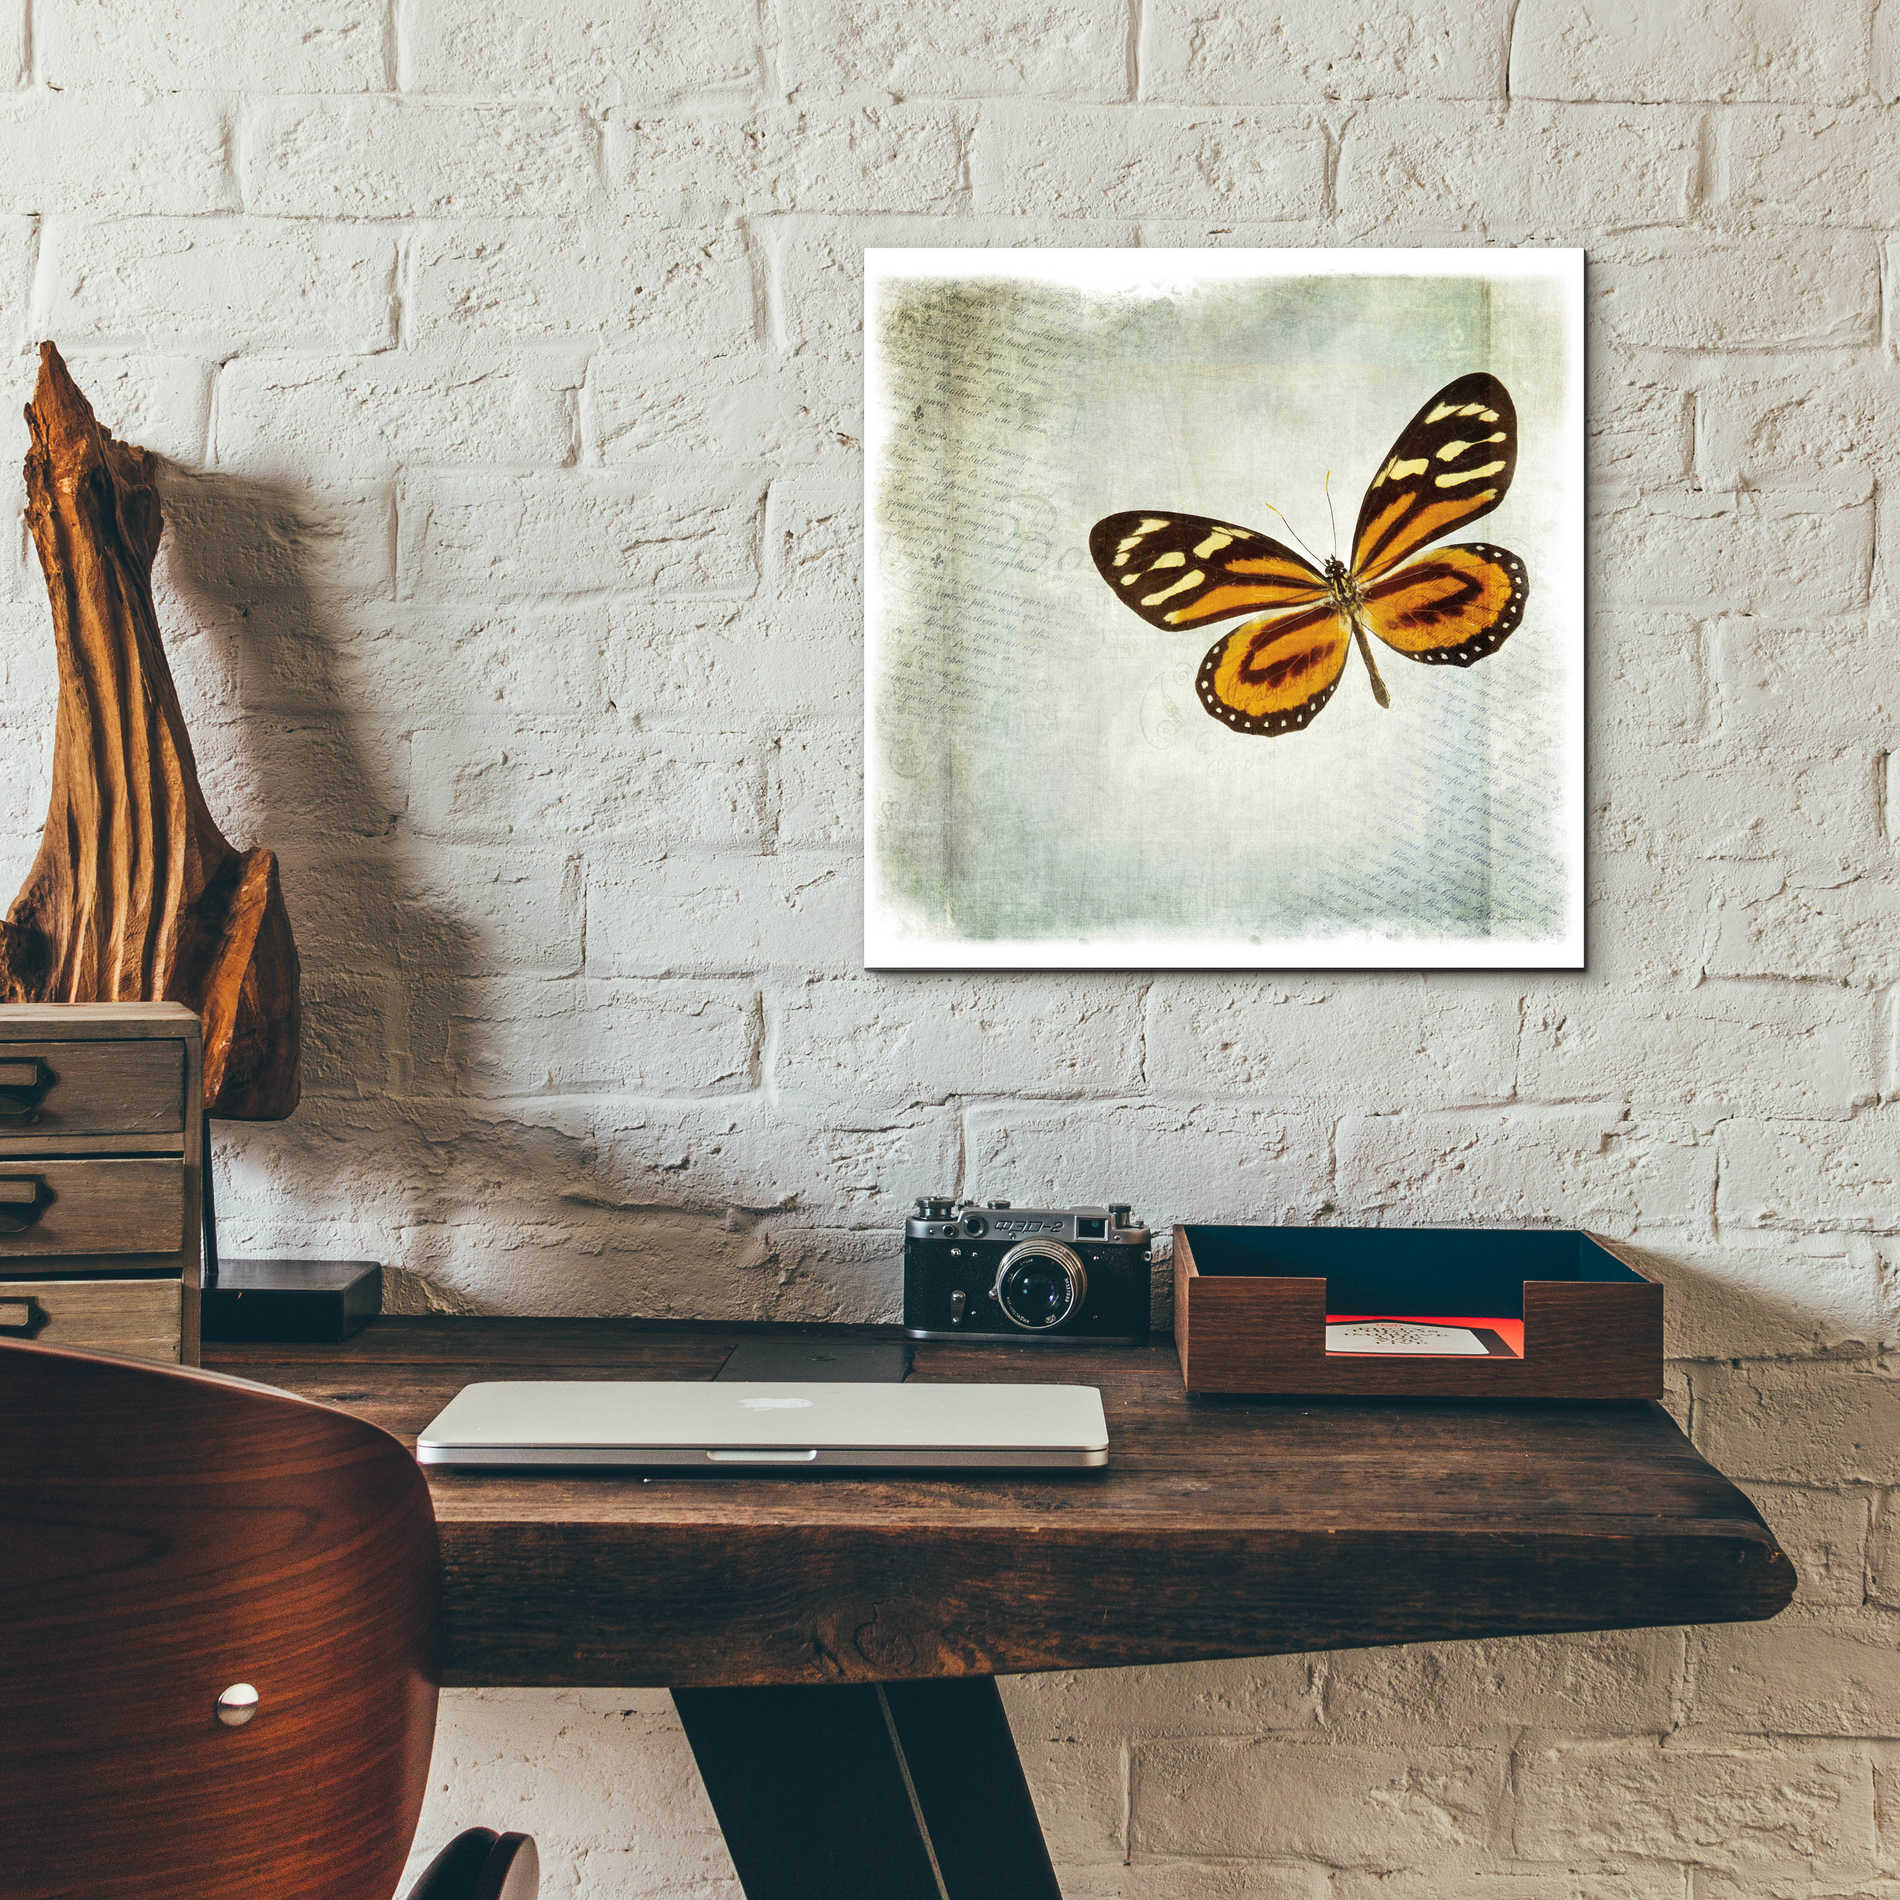 Epic Art 'Floating Butterfly VI' by Debra Van Swearingen, Acrylic Glass Wall Art,12x12